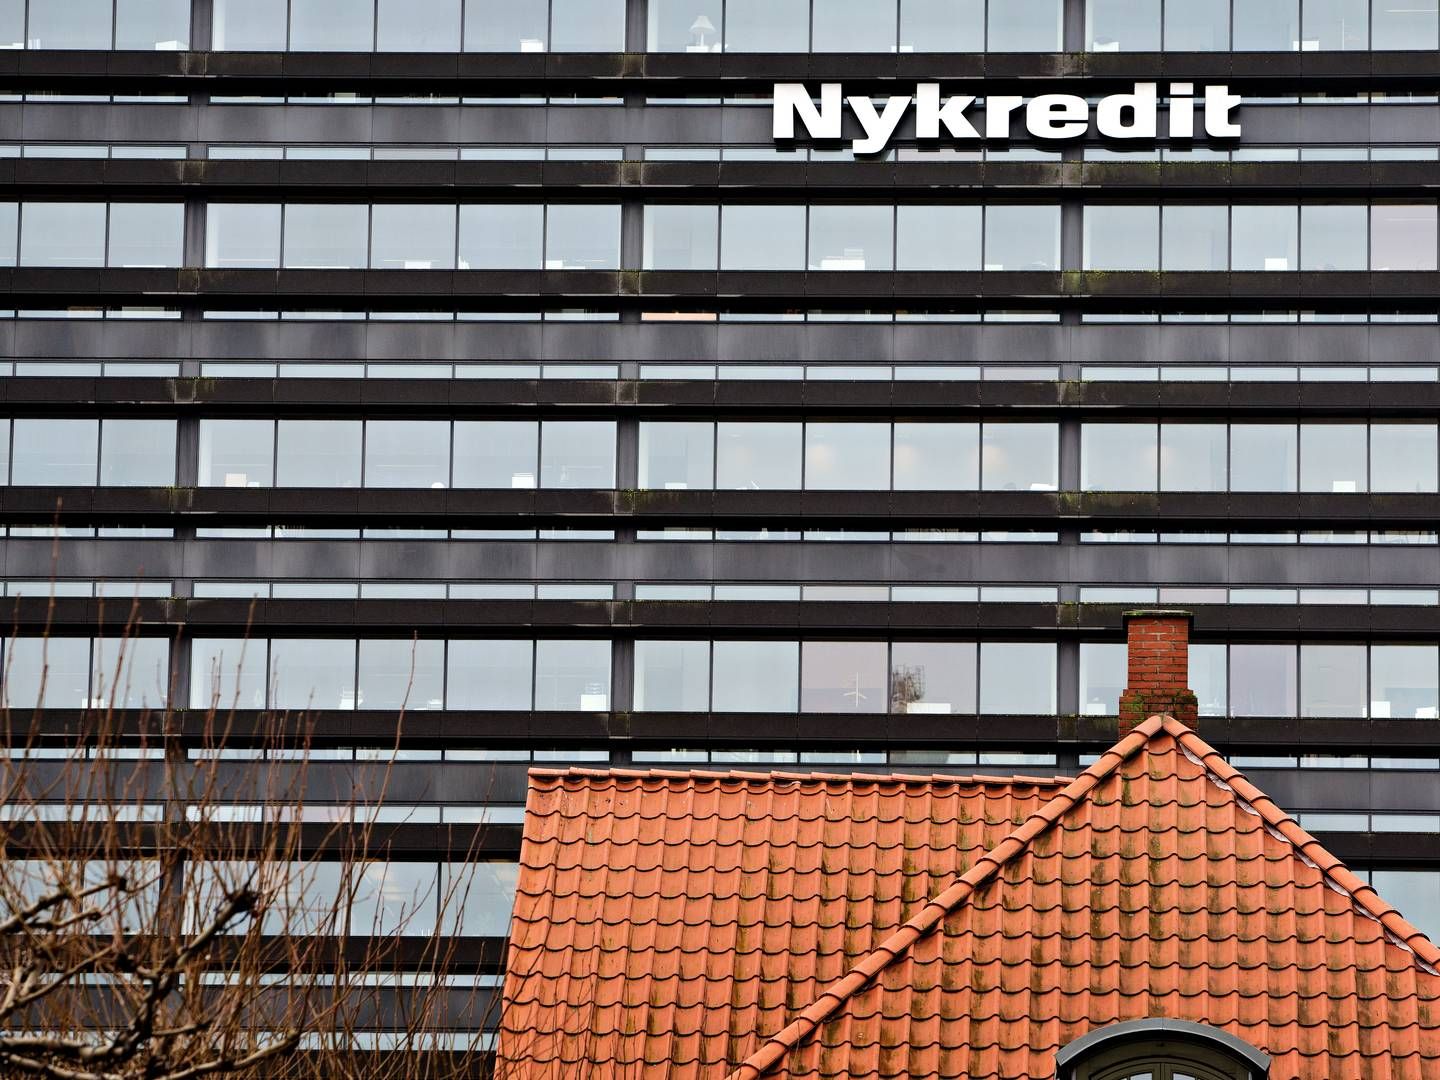 Bankkunder hos Nykredit kan fra mandag få mindst 1 pct. i rente på deres indlån. | Foto: Martin Lehmann/Politiken/Ritzau Scanpix